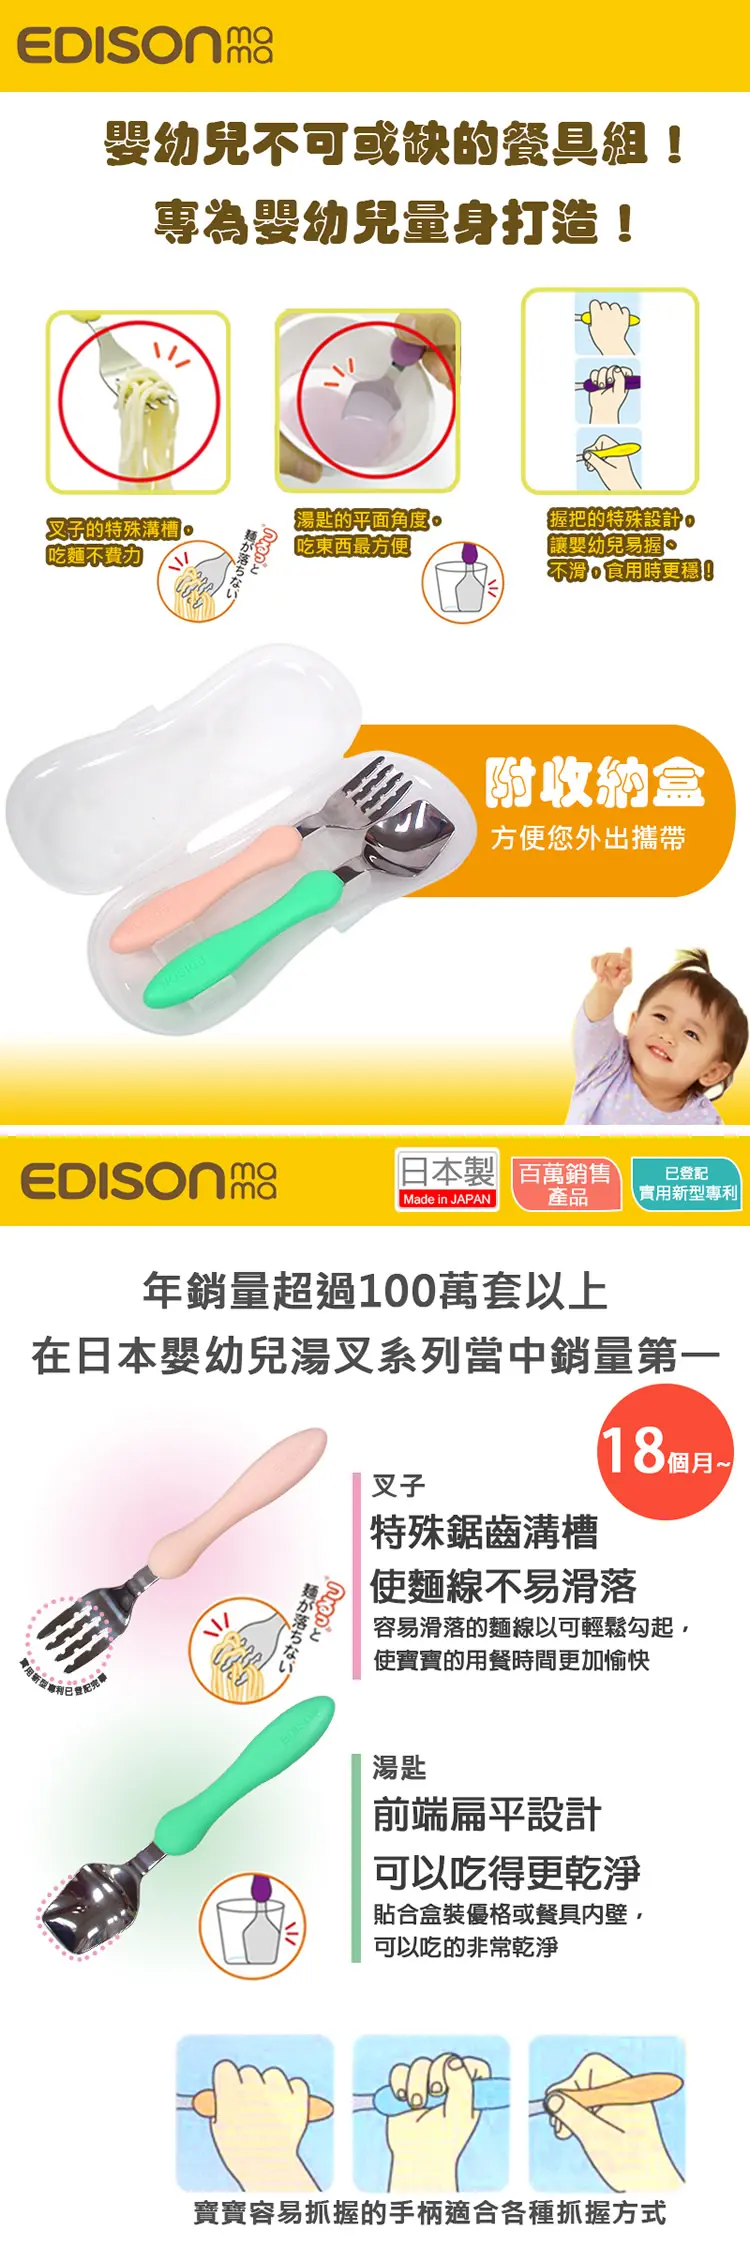 Edison 嬰幼兒不鏽鋼學習匙叉套裝 附收納盒